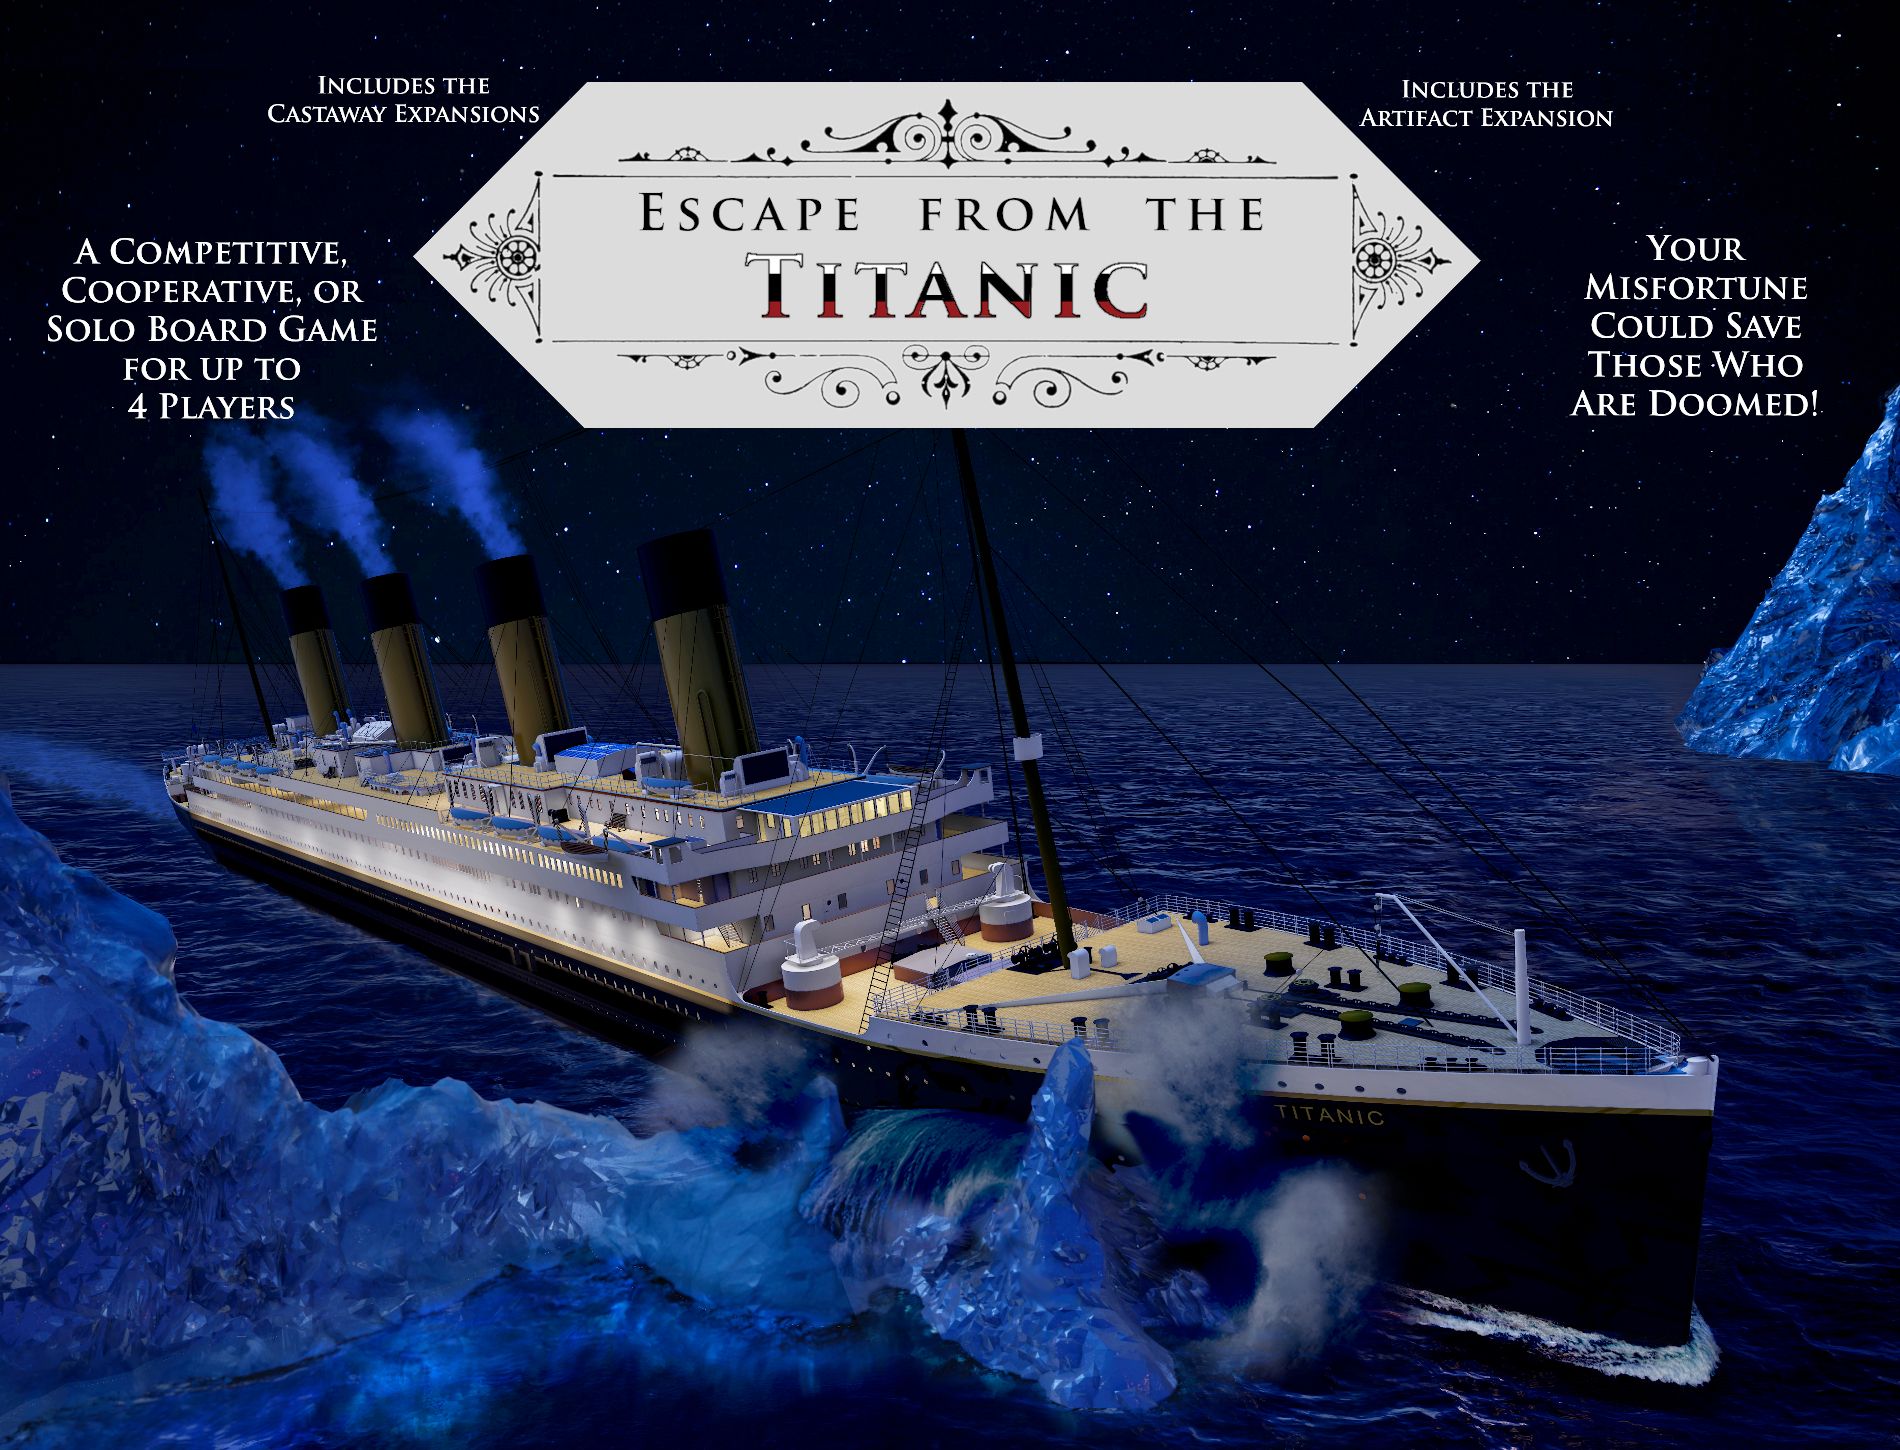 Escape from the Titanic